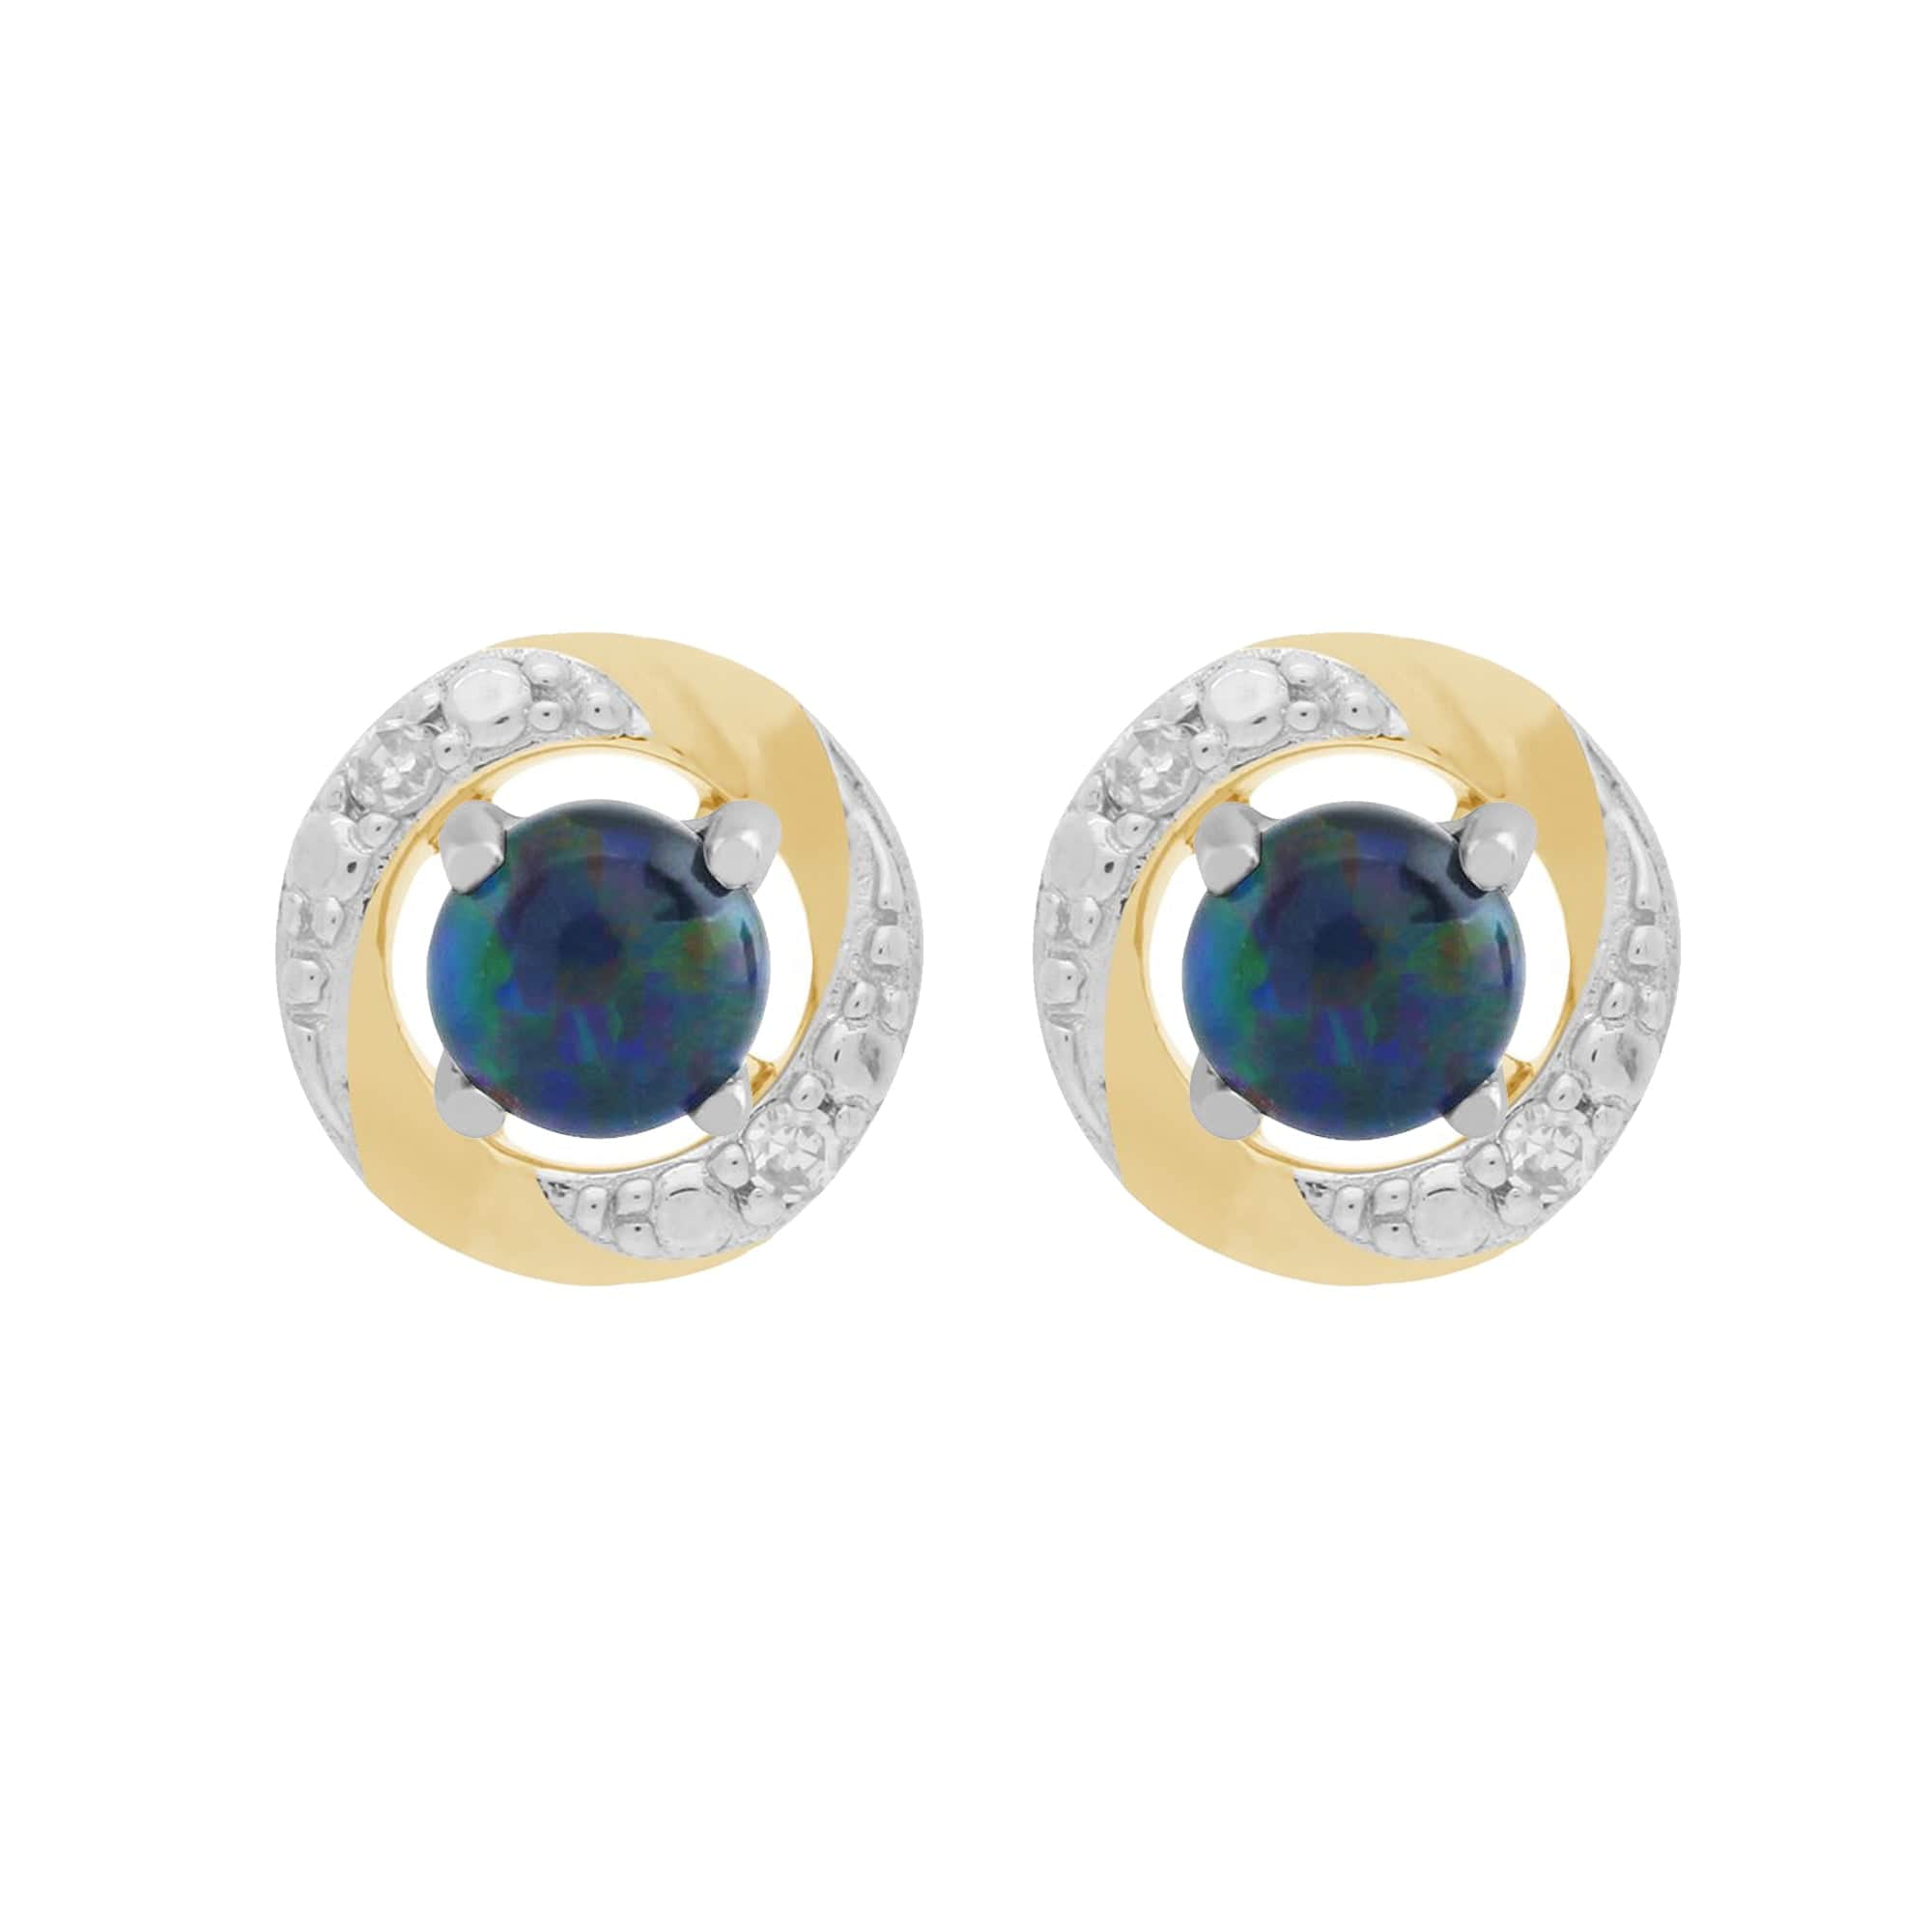 9ct White Gold Triplet Opal Stud Earrings & Diamond Halo Ear Jacket Image 1 